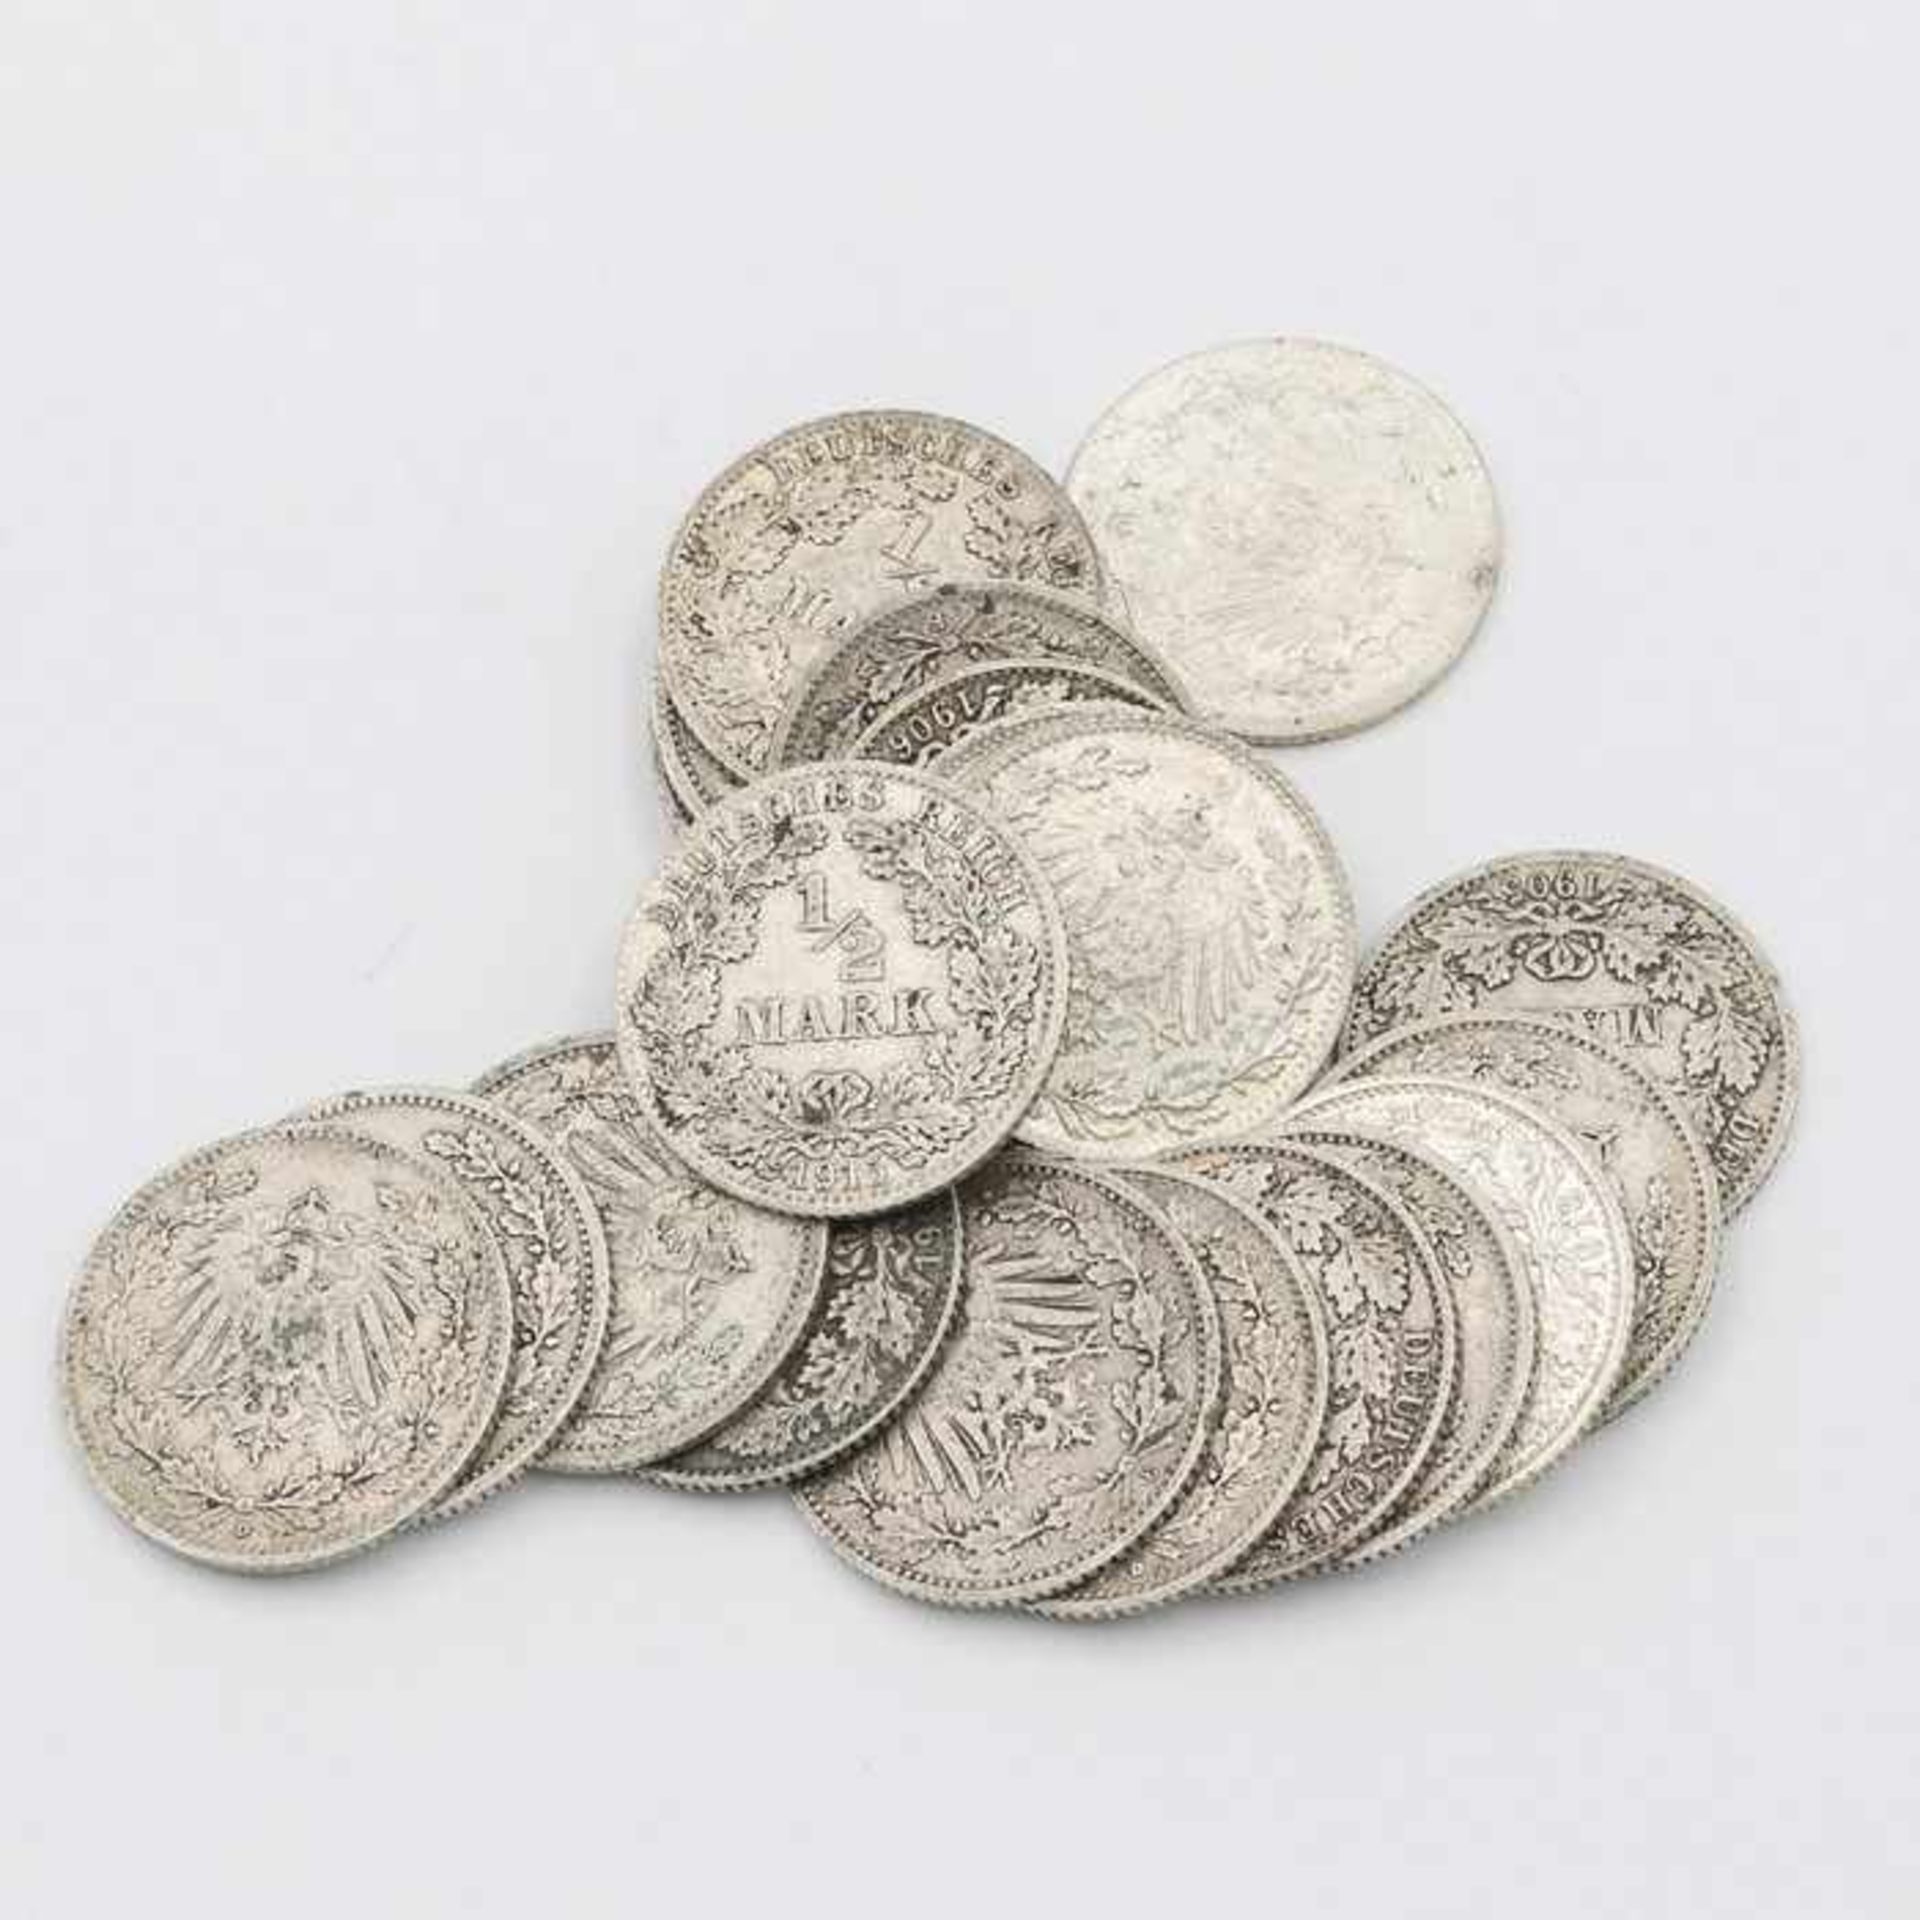 Münzen - KaiserreichSi 900, 22x 1/2 Mark, 1905-1916, Gges. ca. 60g, vz-s- - -20.00 % buyer's premium